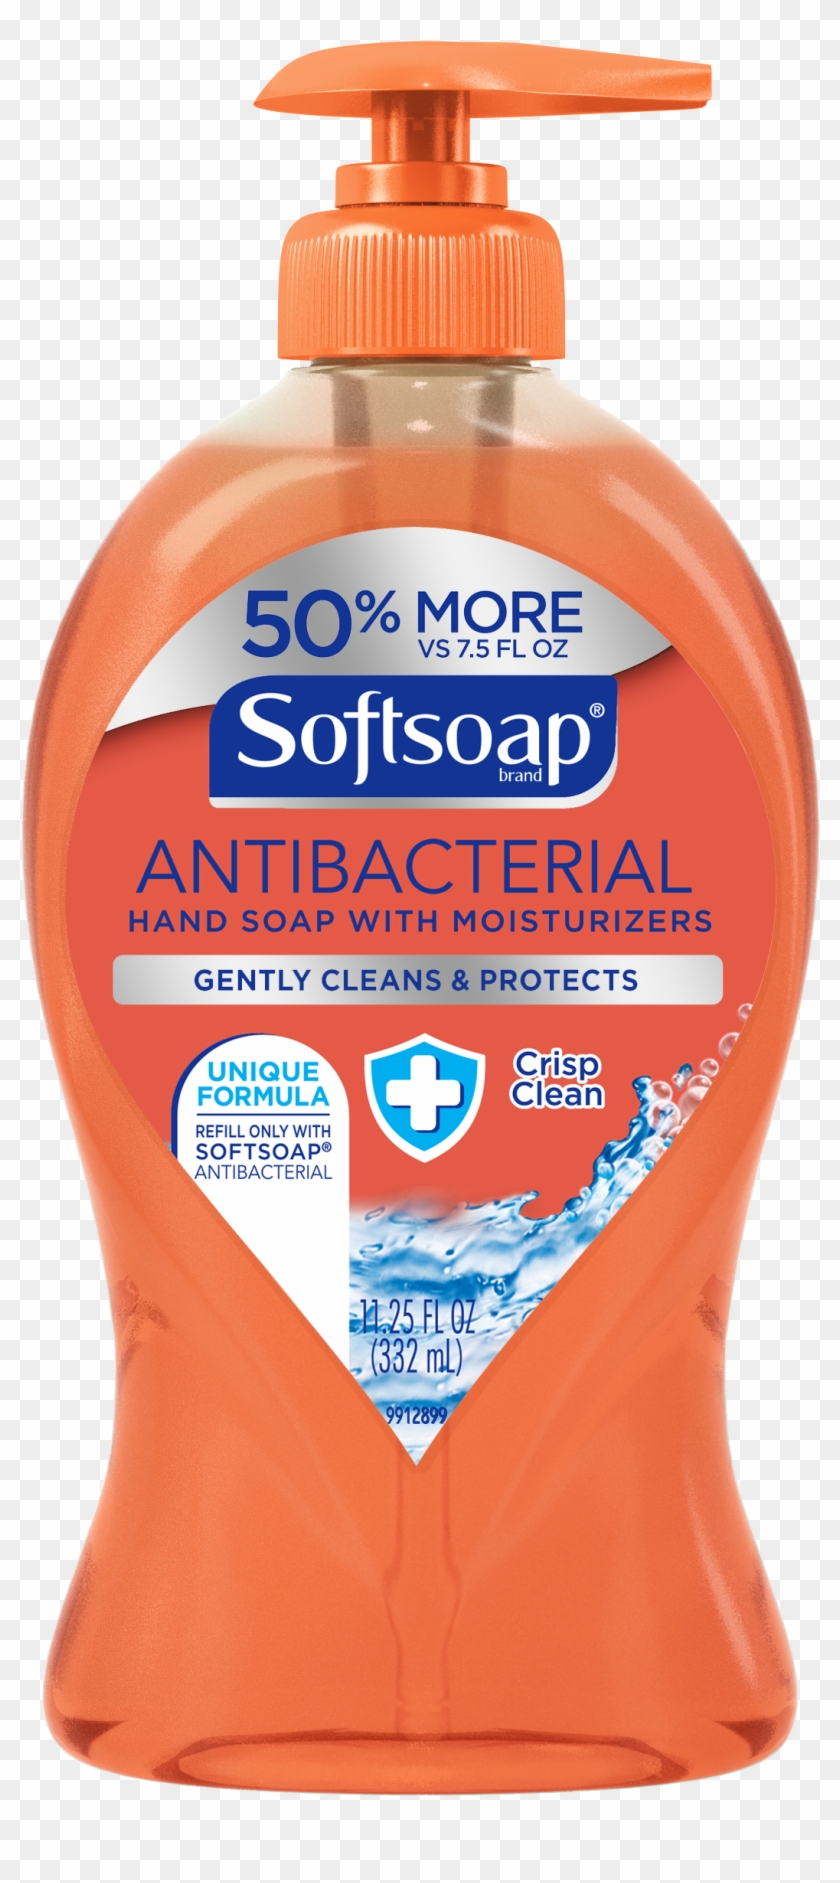 Softsoap Antibacterial Liquid Hand Soap, Crisp And - Softsoap Crisp Clean Clipart #757293